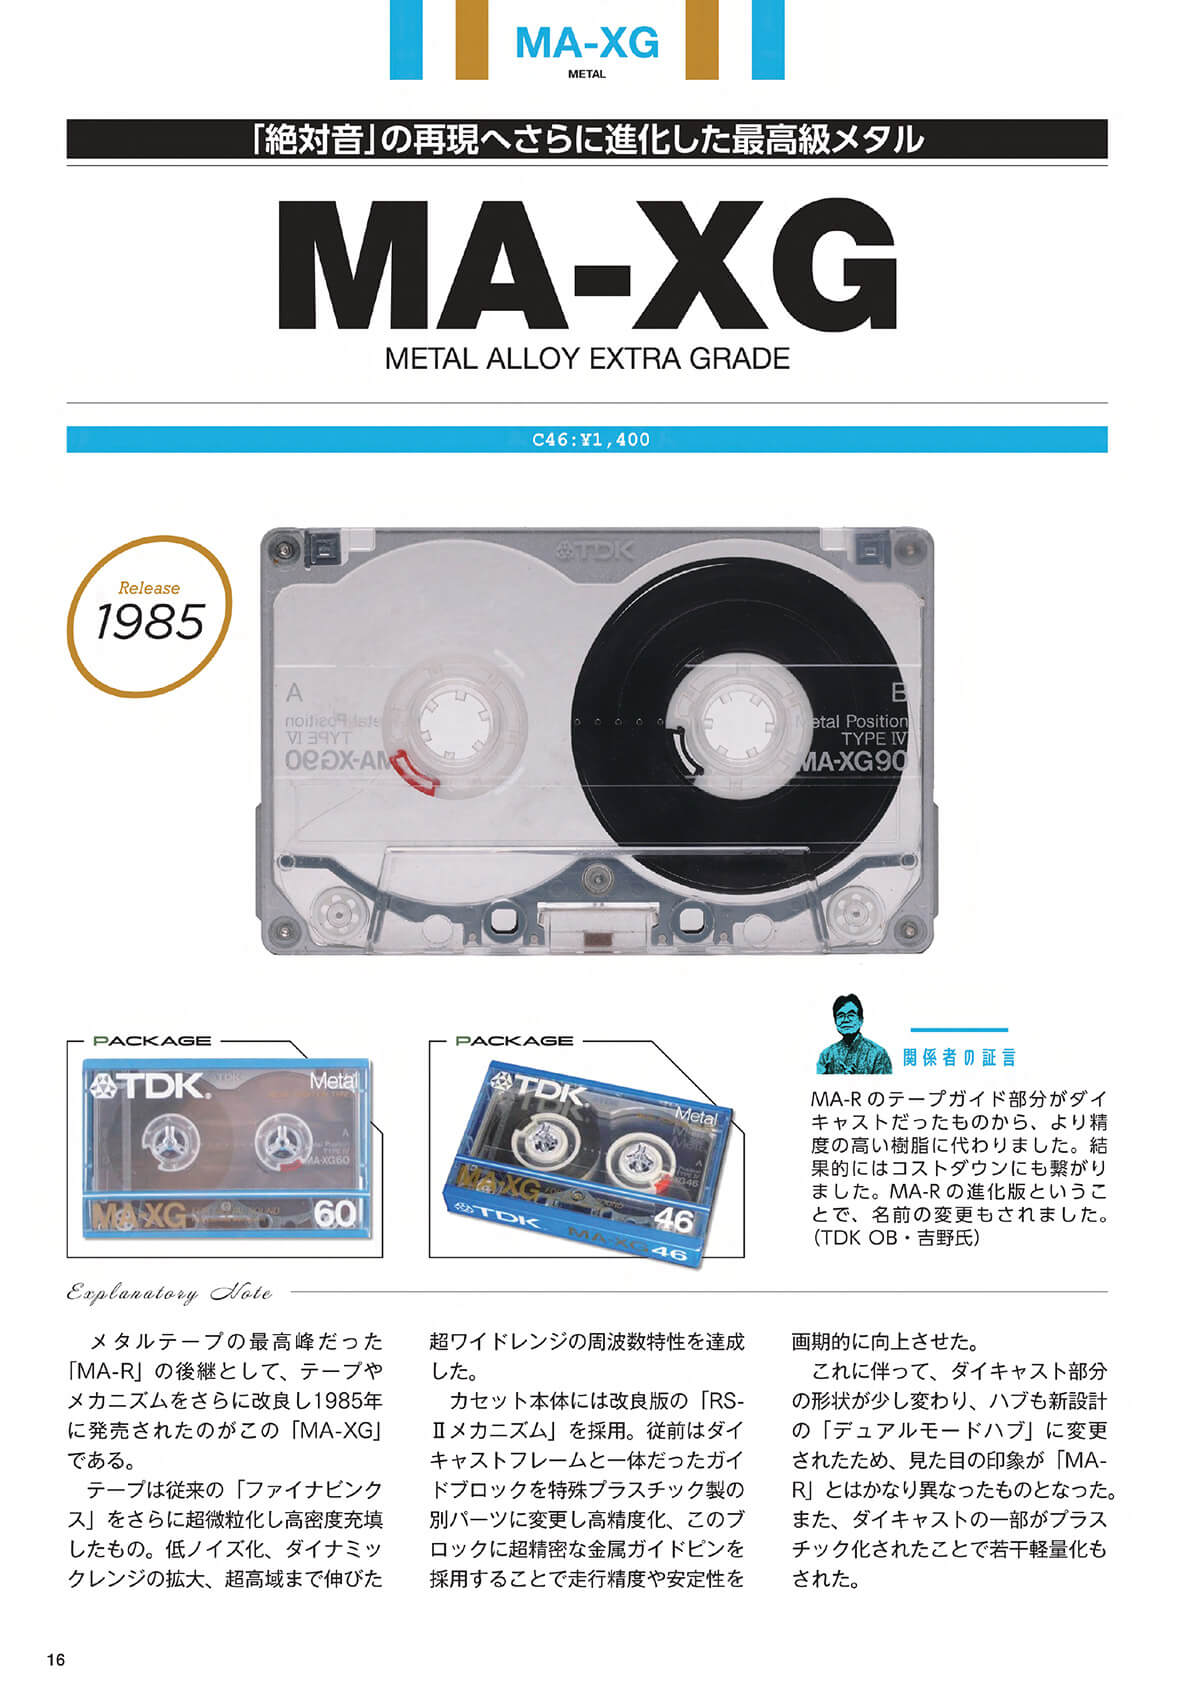 1985年に発売された最高級メタル「MA-XG」の特集ページ